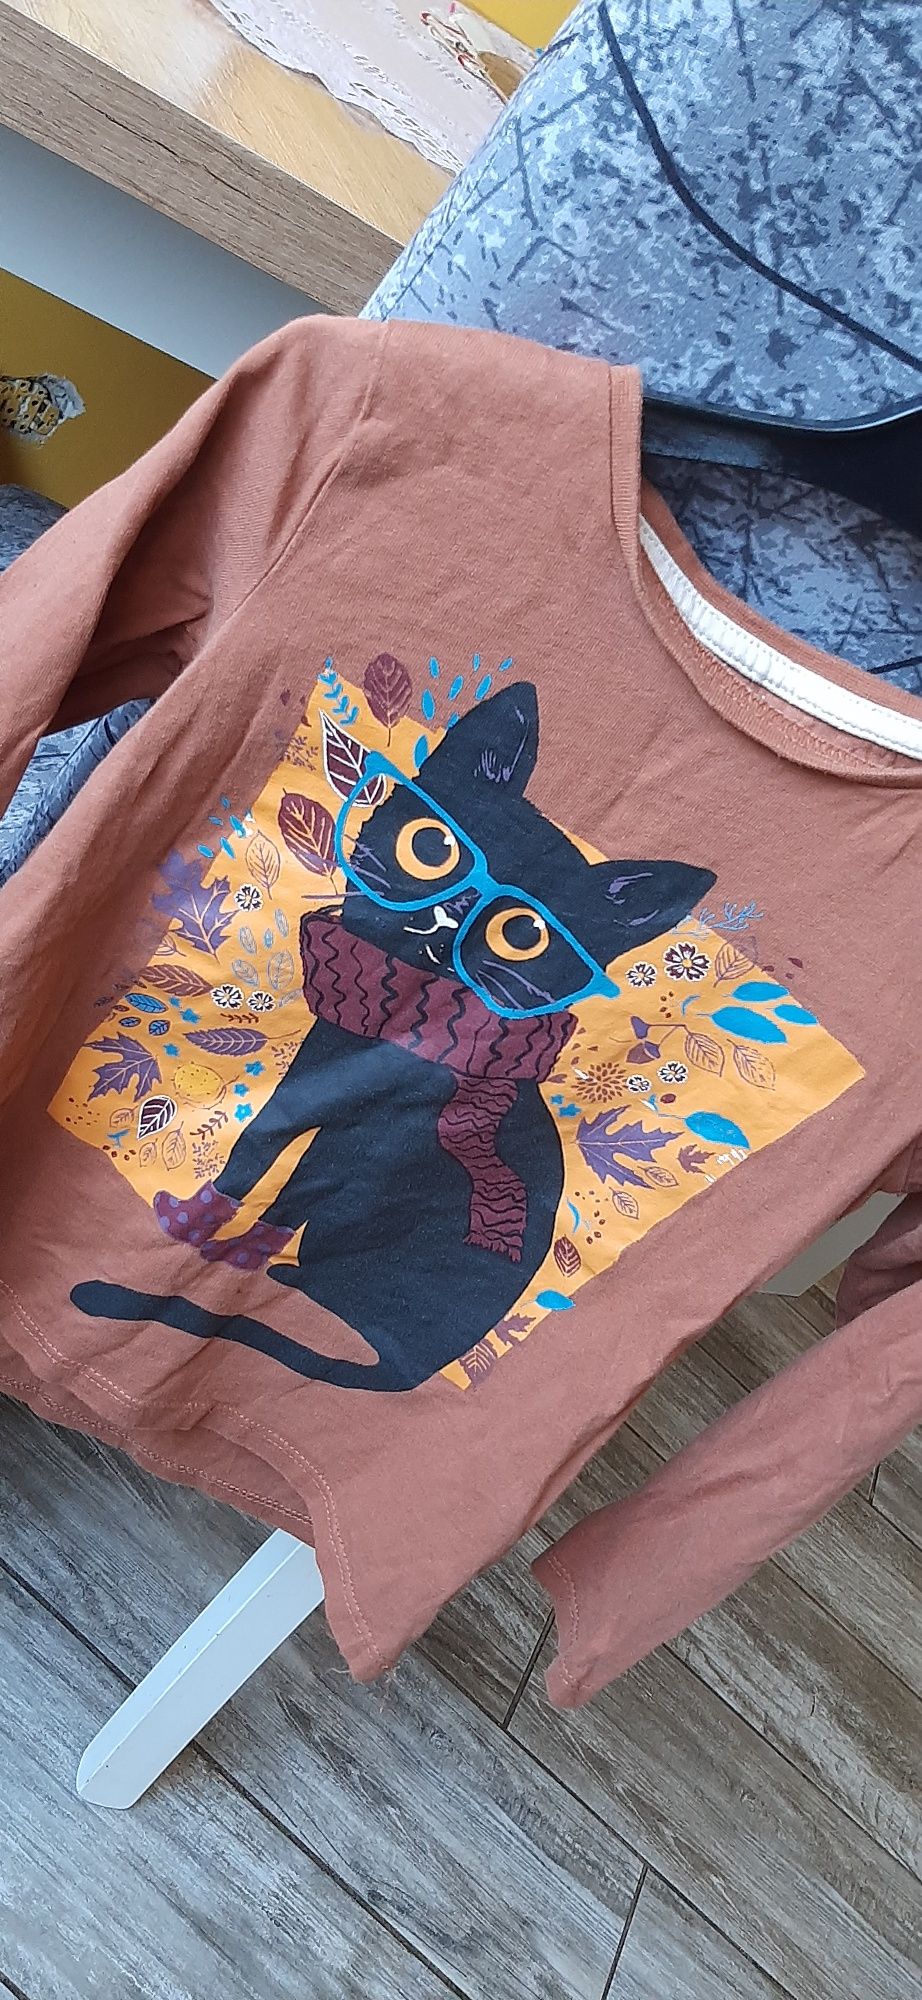 Bluzeczka z kotkiem 116 cm